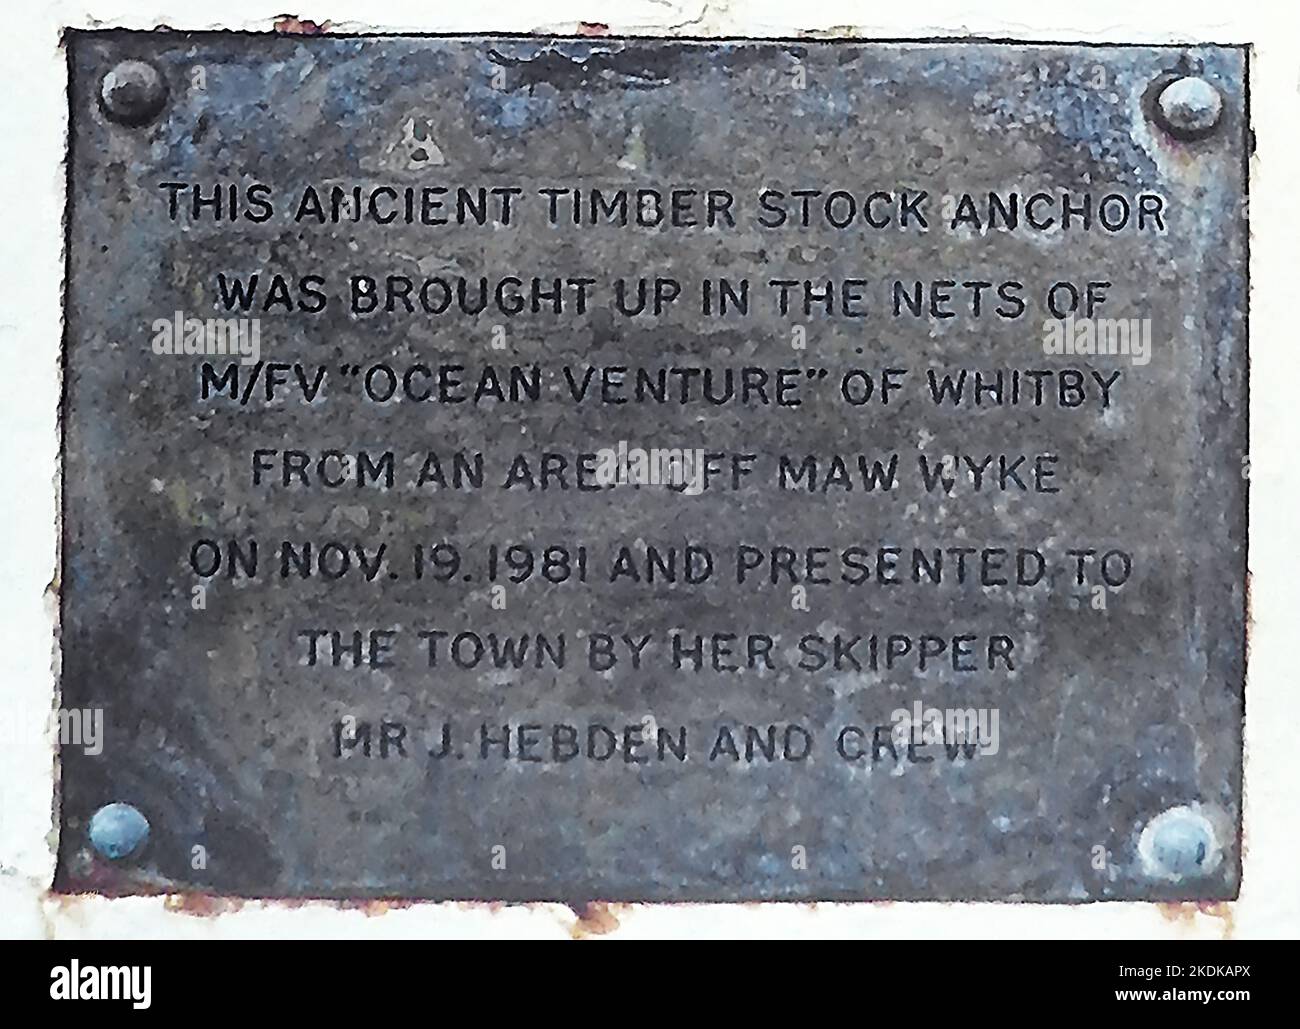 Plakette am Tate Hill Pier, Whitby, Yorkshire, neben einem Anker. Dieser alte Holzlageranker wurde am 19.. November 1981 in den Netzen des Ocean Venture von Whitby aus einem Gebiet vor Maw Wyke aufgezogen und der Stadt von ihrem Skipper J. Hebden und der Besatzung überreicht. Stockfoto